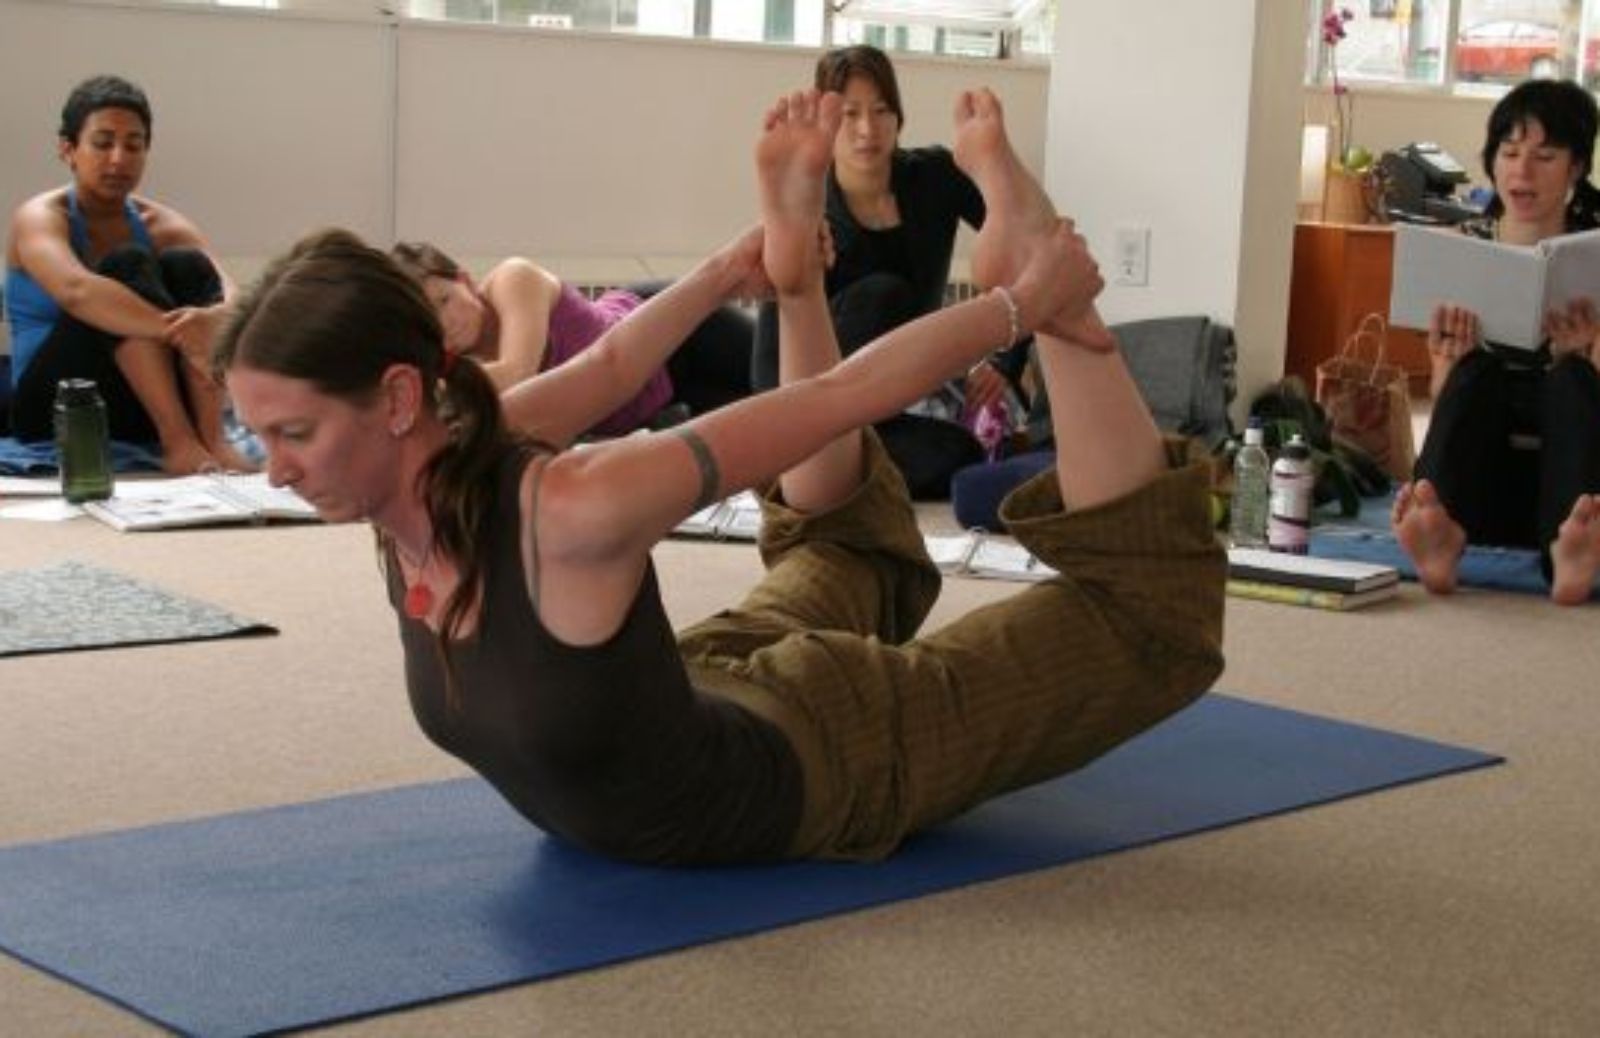 Come imparare a fare yoga. Asana in posizione prona: l'arco